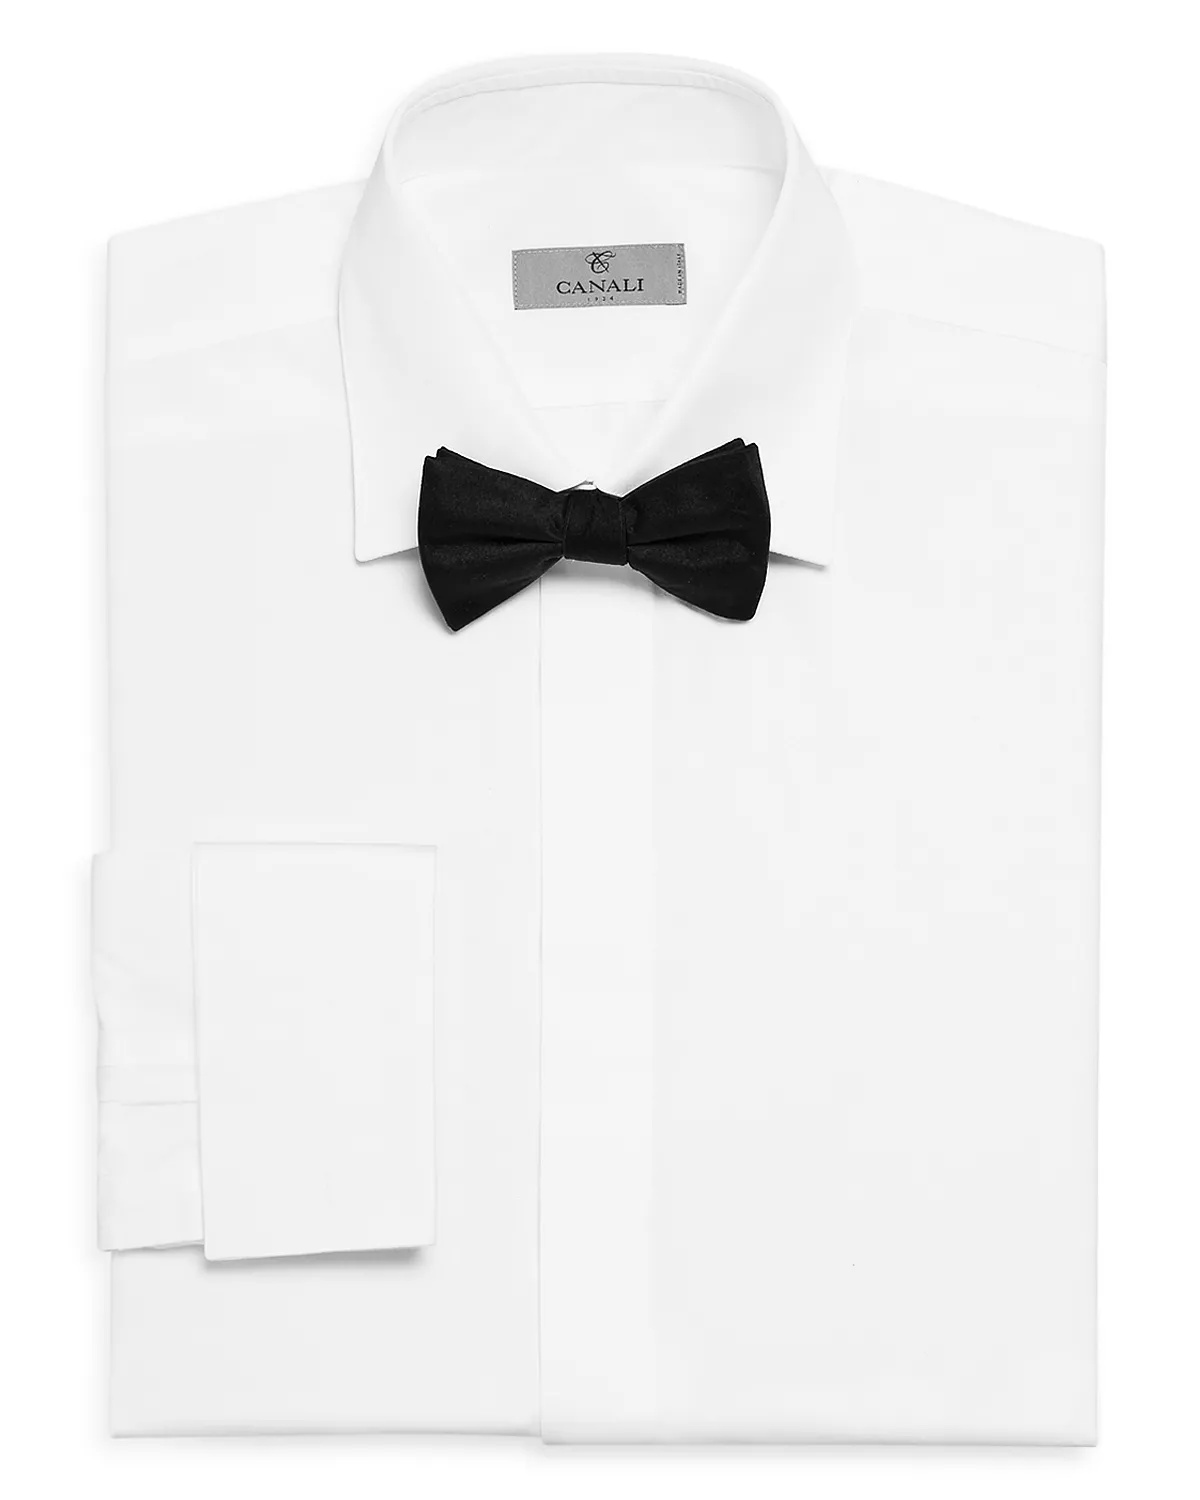 Basics Formal Classic Fit Dress Shirt - 1